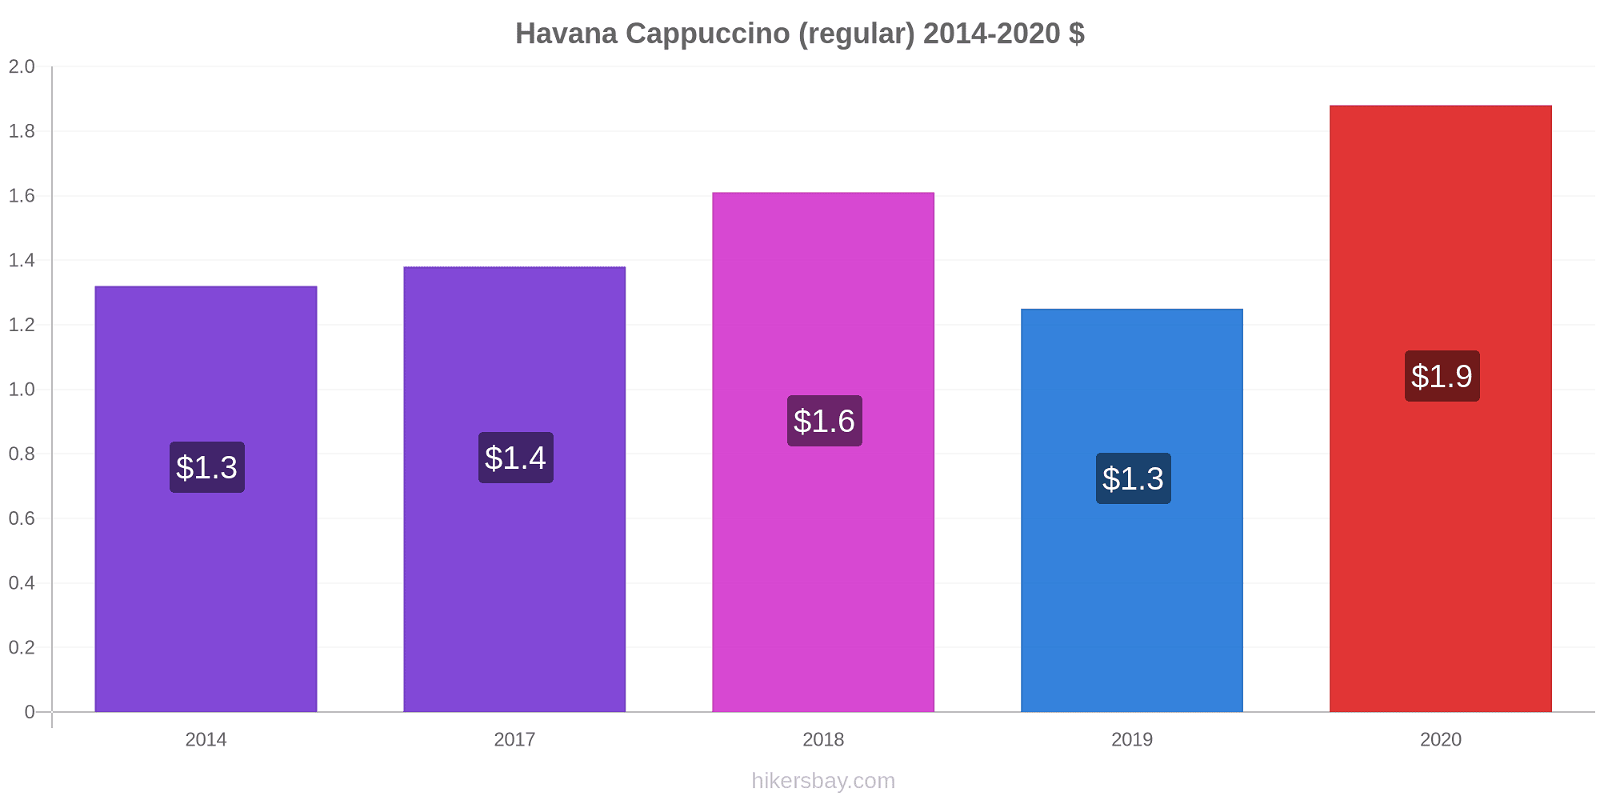 Havana price changes Cappuccino (regular) hikersbay.com